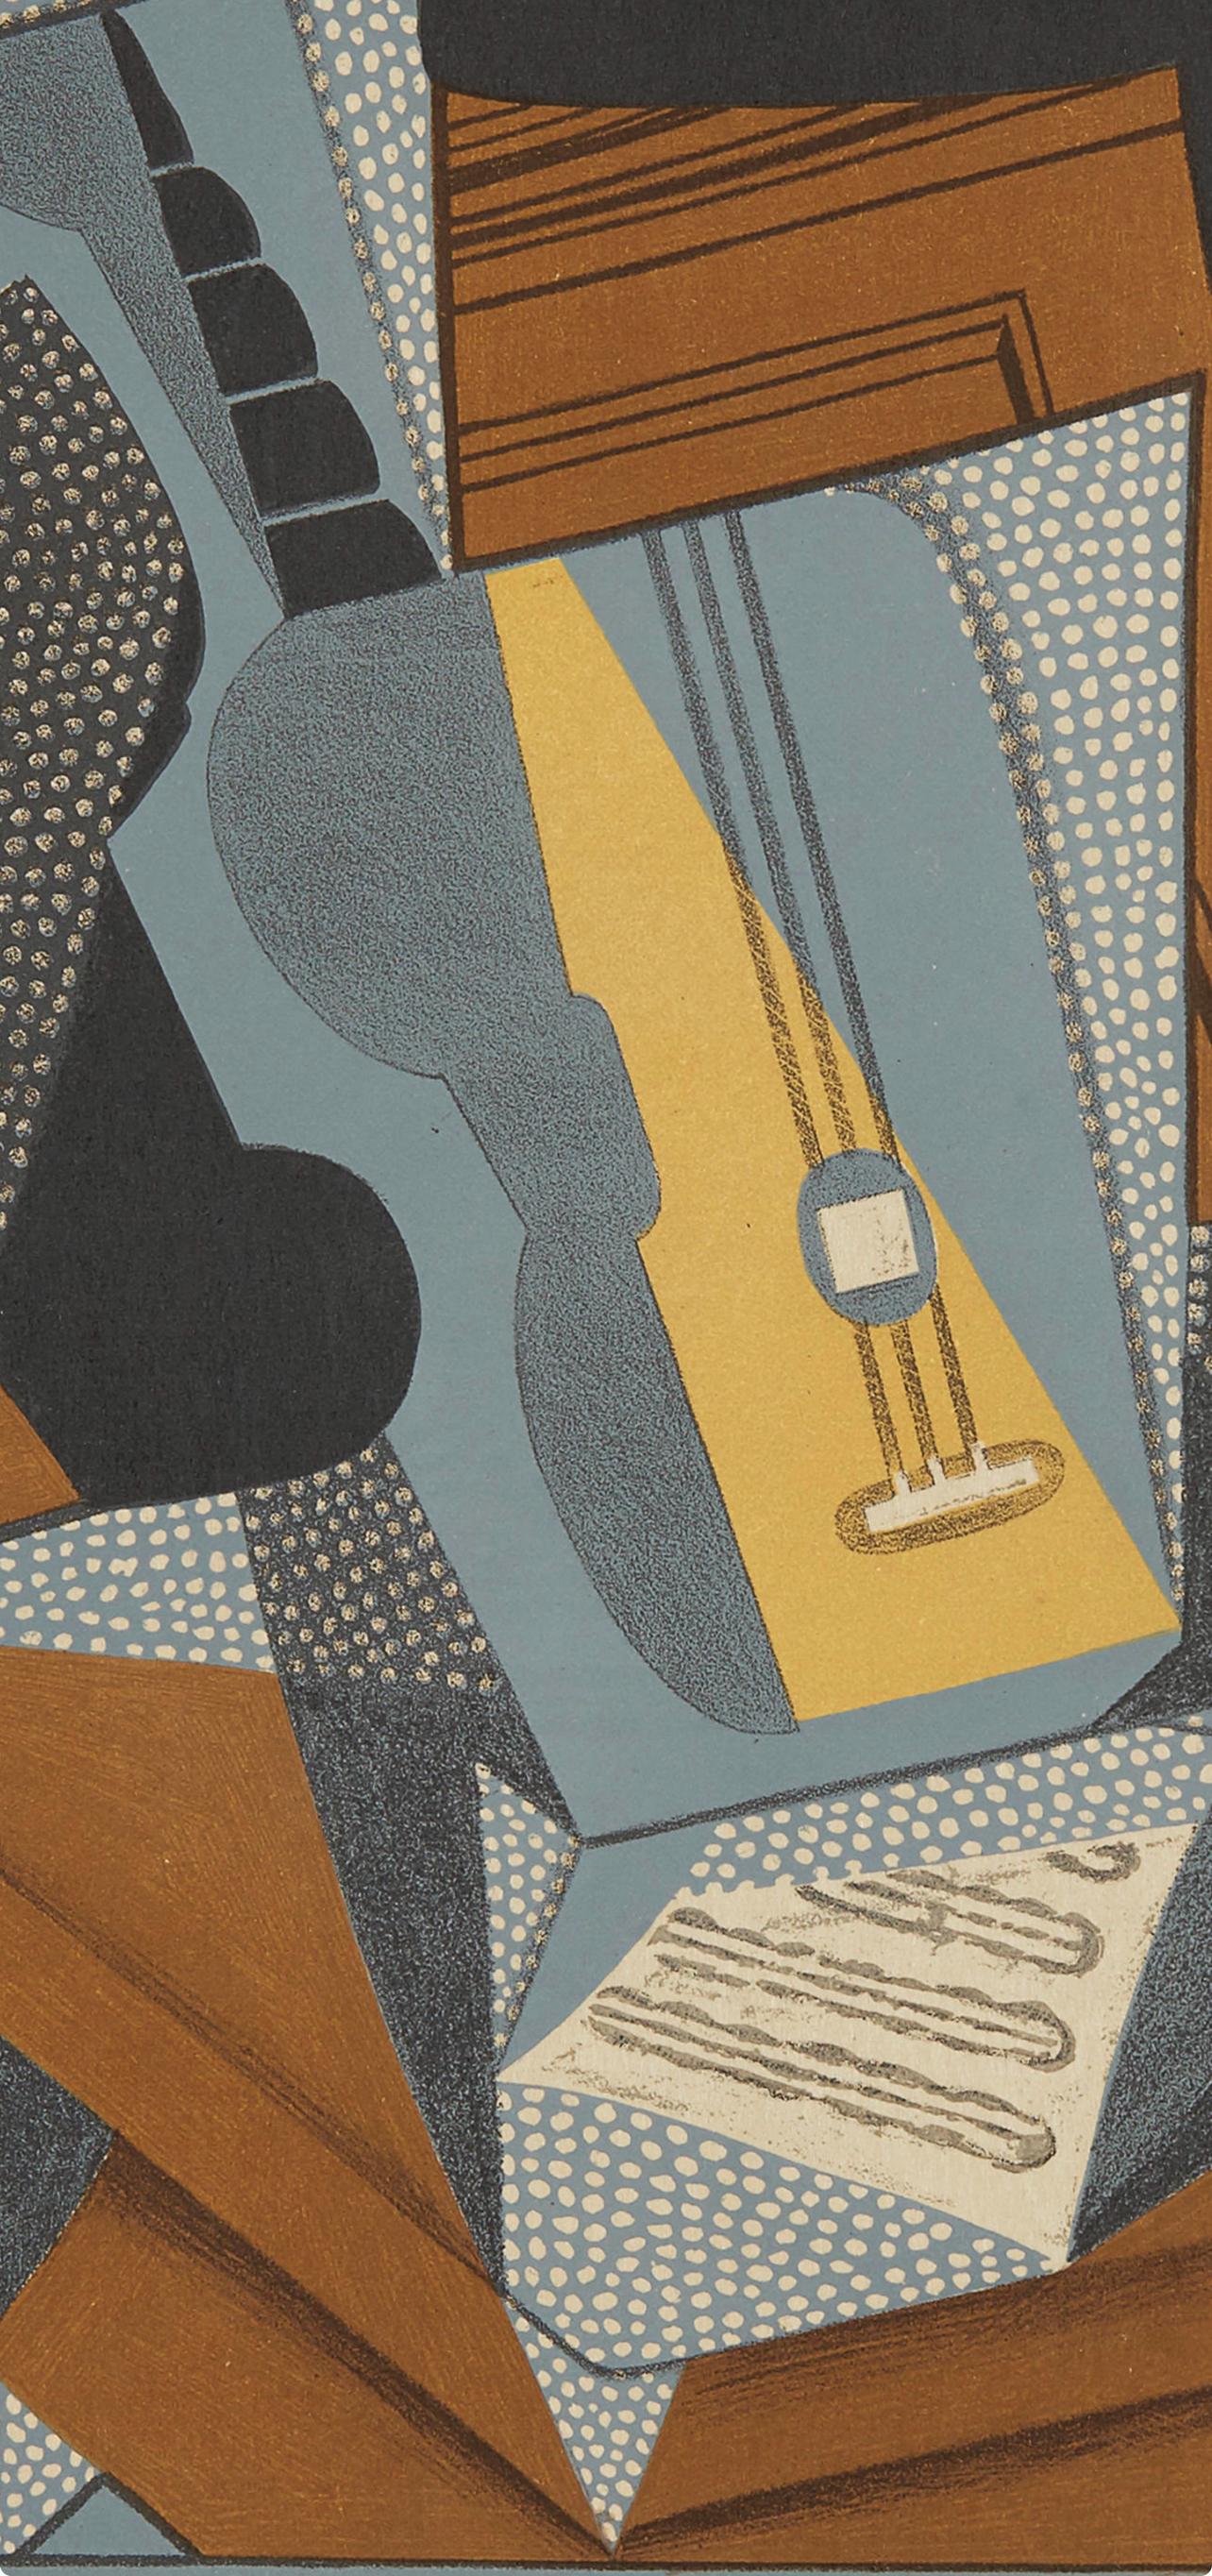 Gris, Guitare (Kahnweiler 1969), Au Soleil du Plafond (after) - Modern Print by Juan Gris